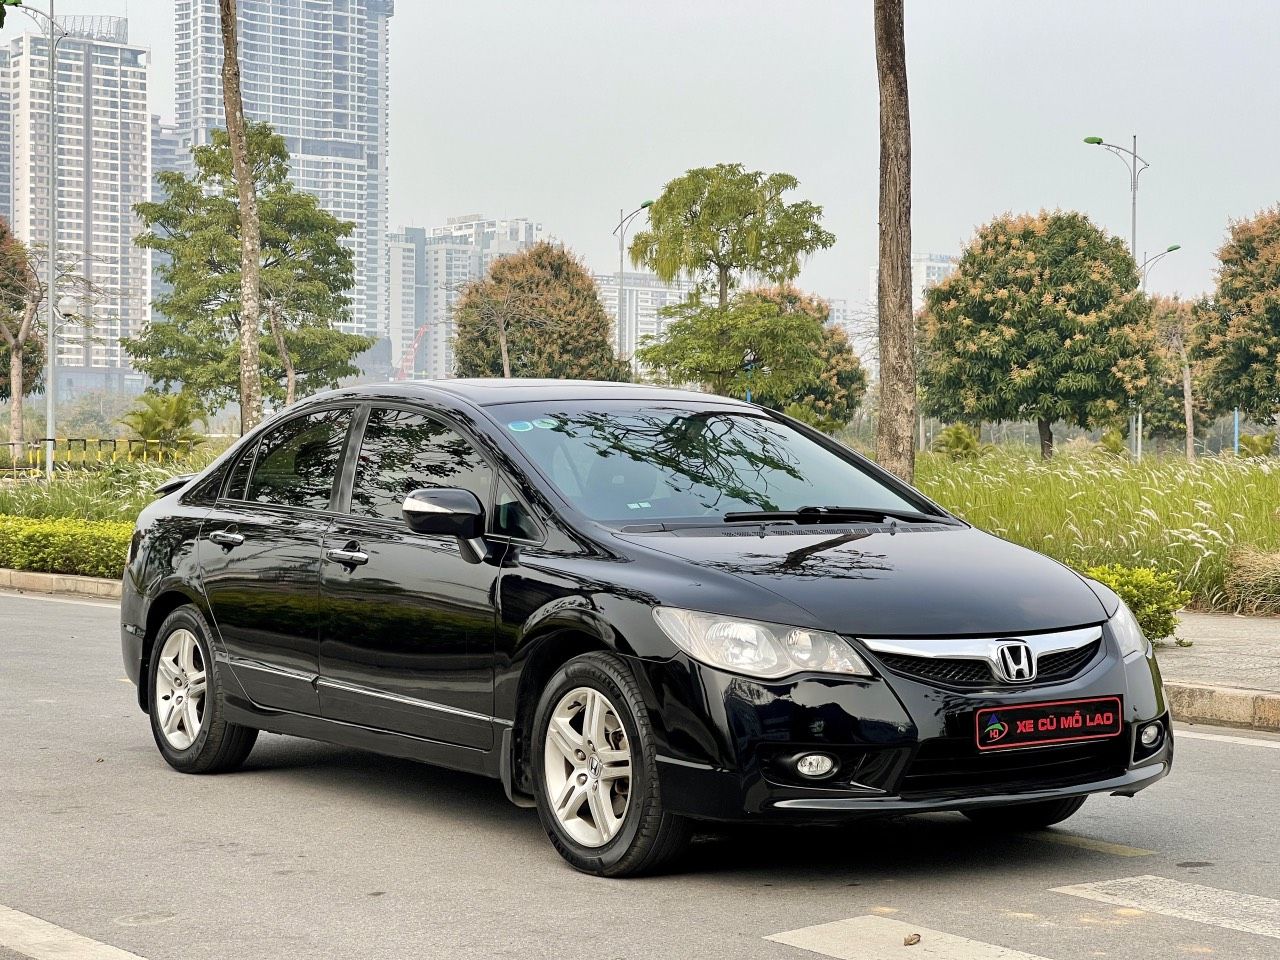 Mua bán xe Honda Civic AT 2010 Màu Đen  XC00026089